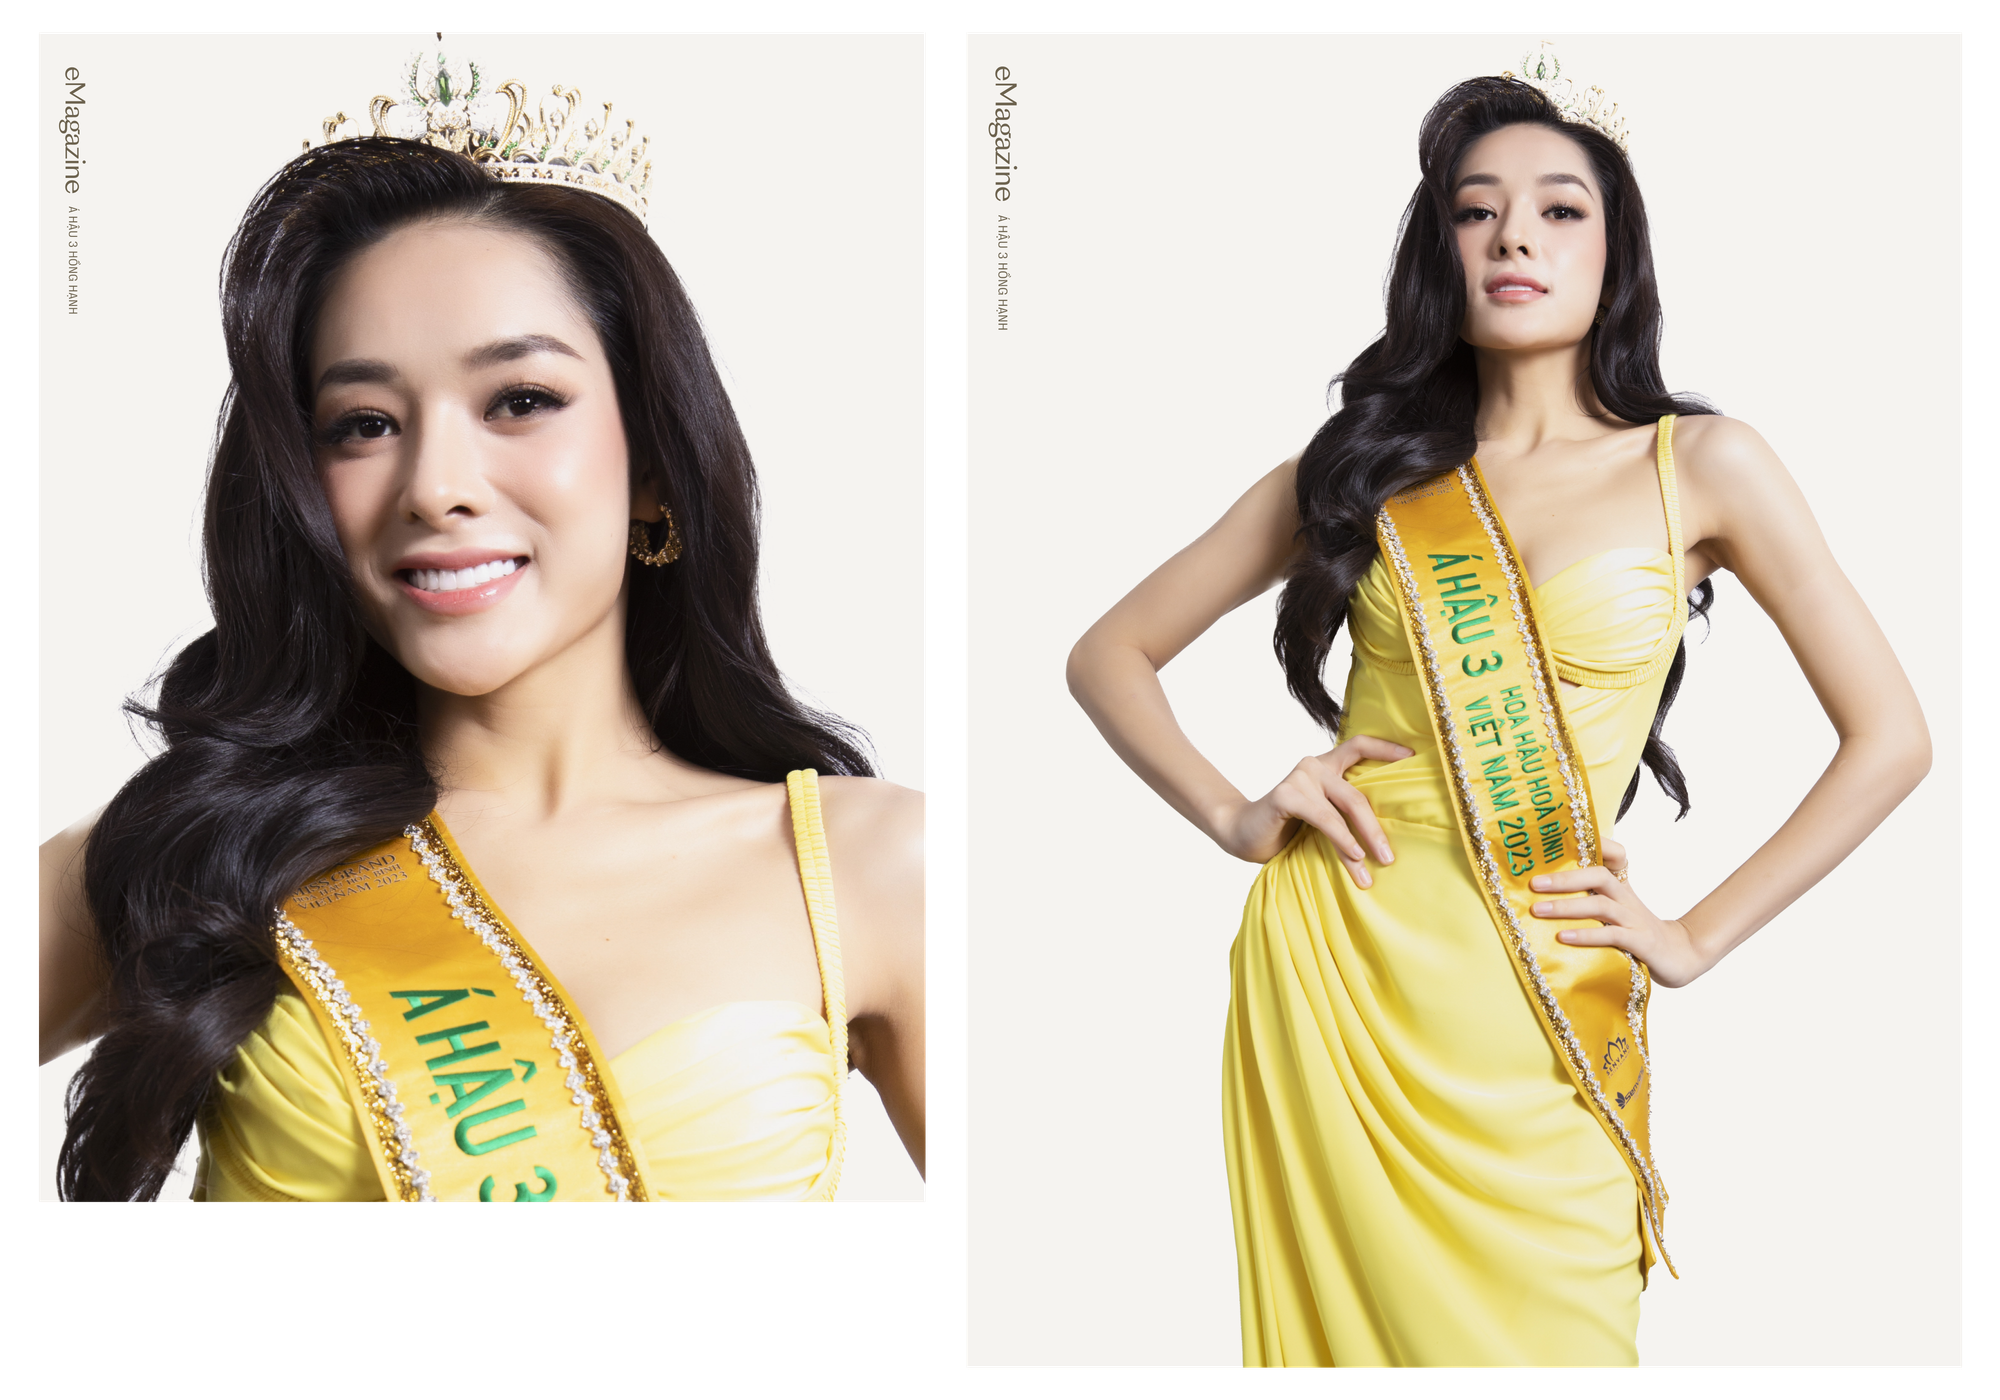 Lê Hoàng Phương phải trở thành một đại diện đầy tự hào tại Miss Grand International chứ không có sự tiếc nuối nào cả! - Ảnh 36.